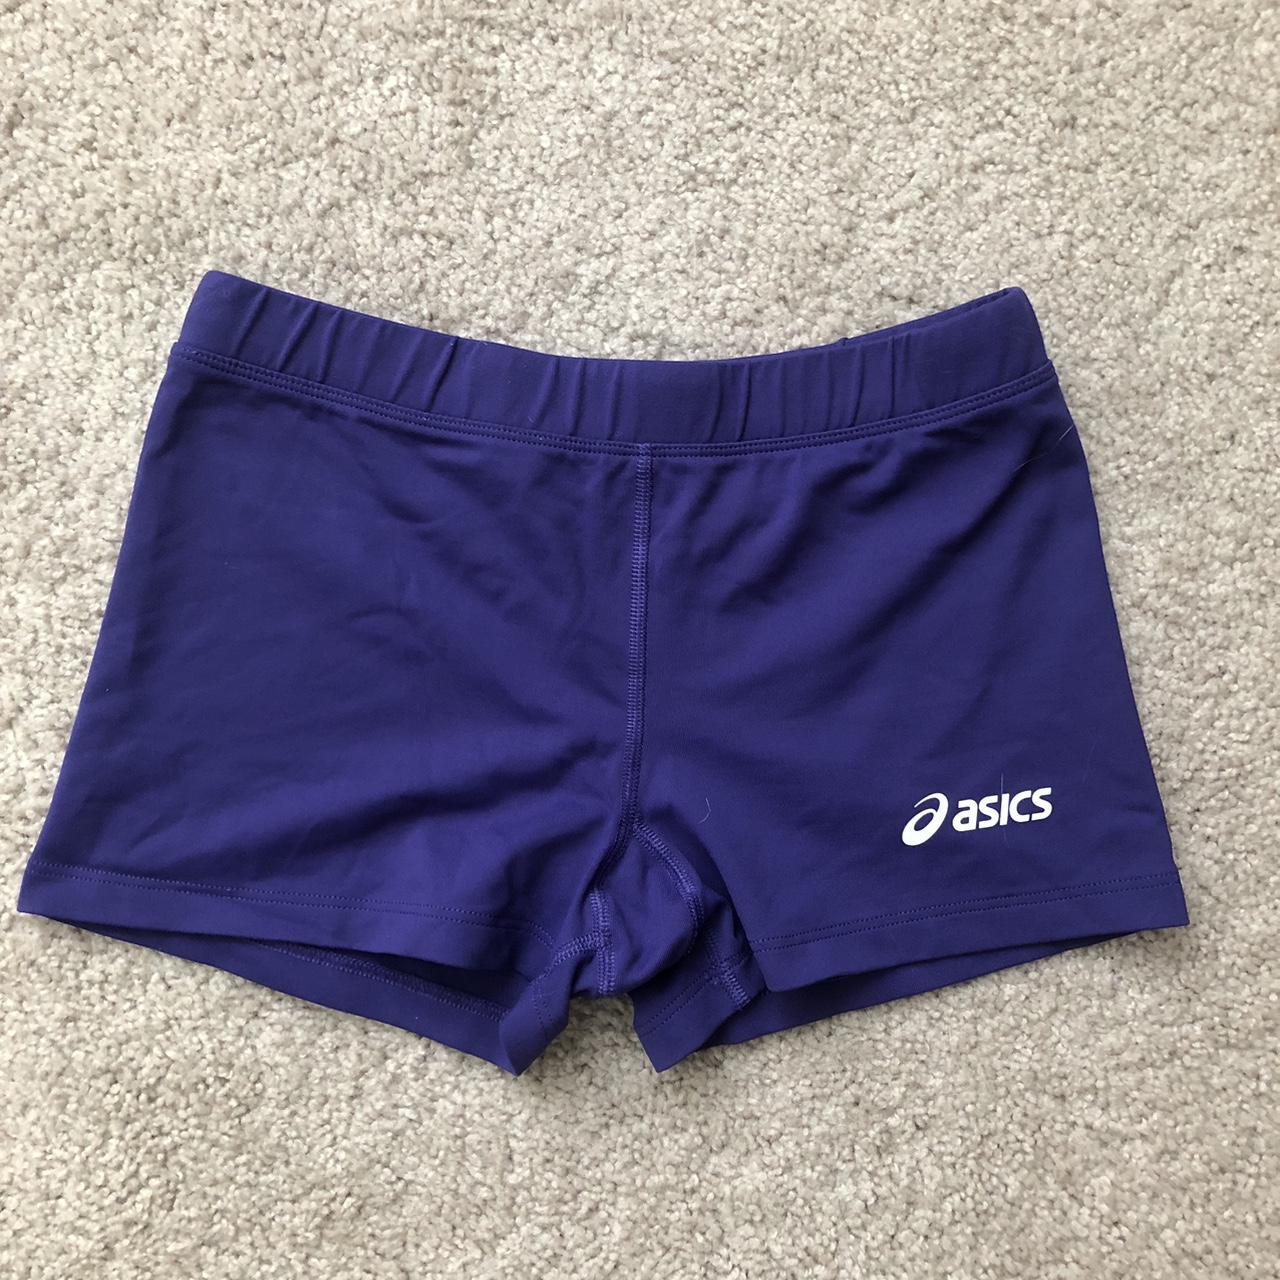 Asics Blue Spandex Shorts medium